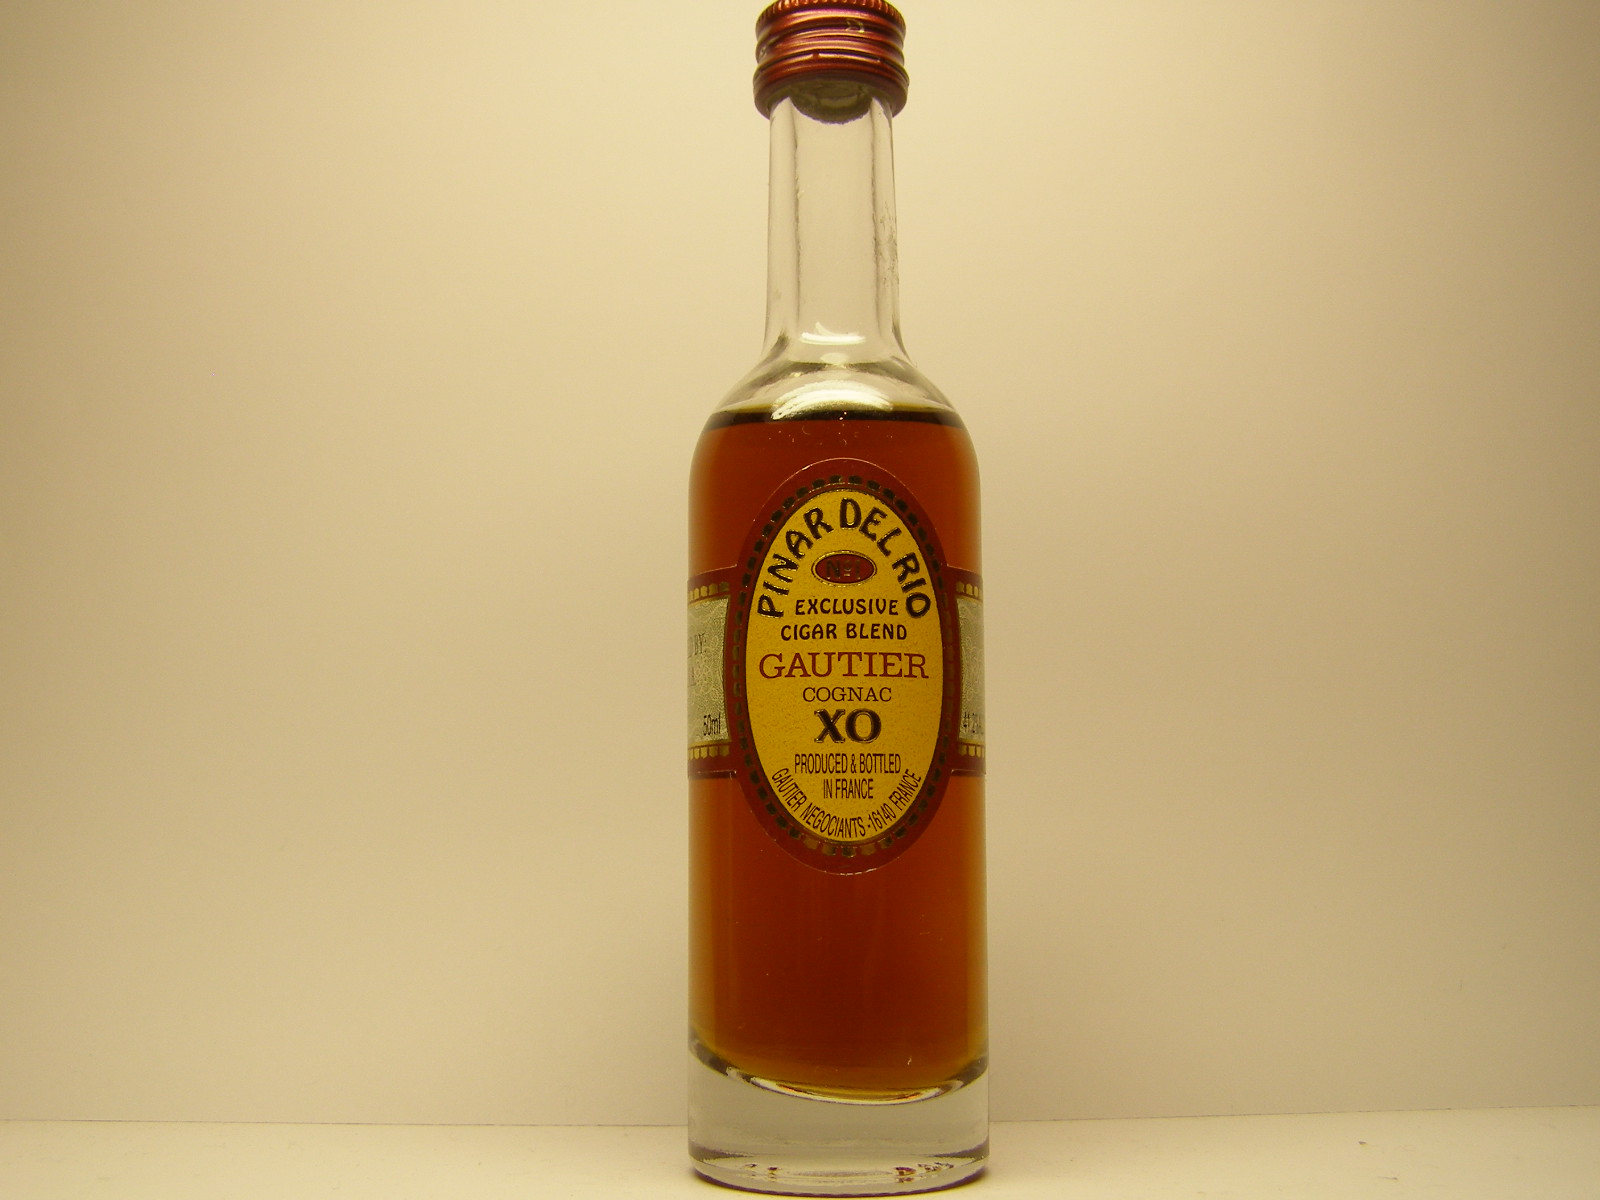 Pinar del Rio XO Cognac